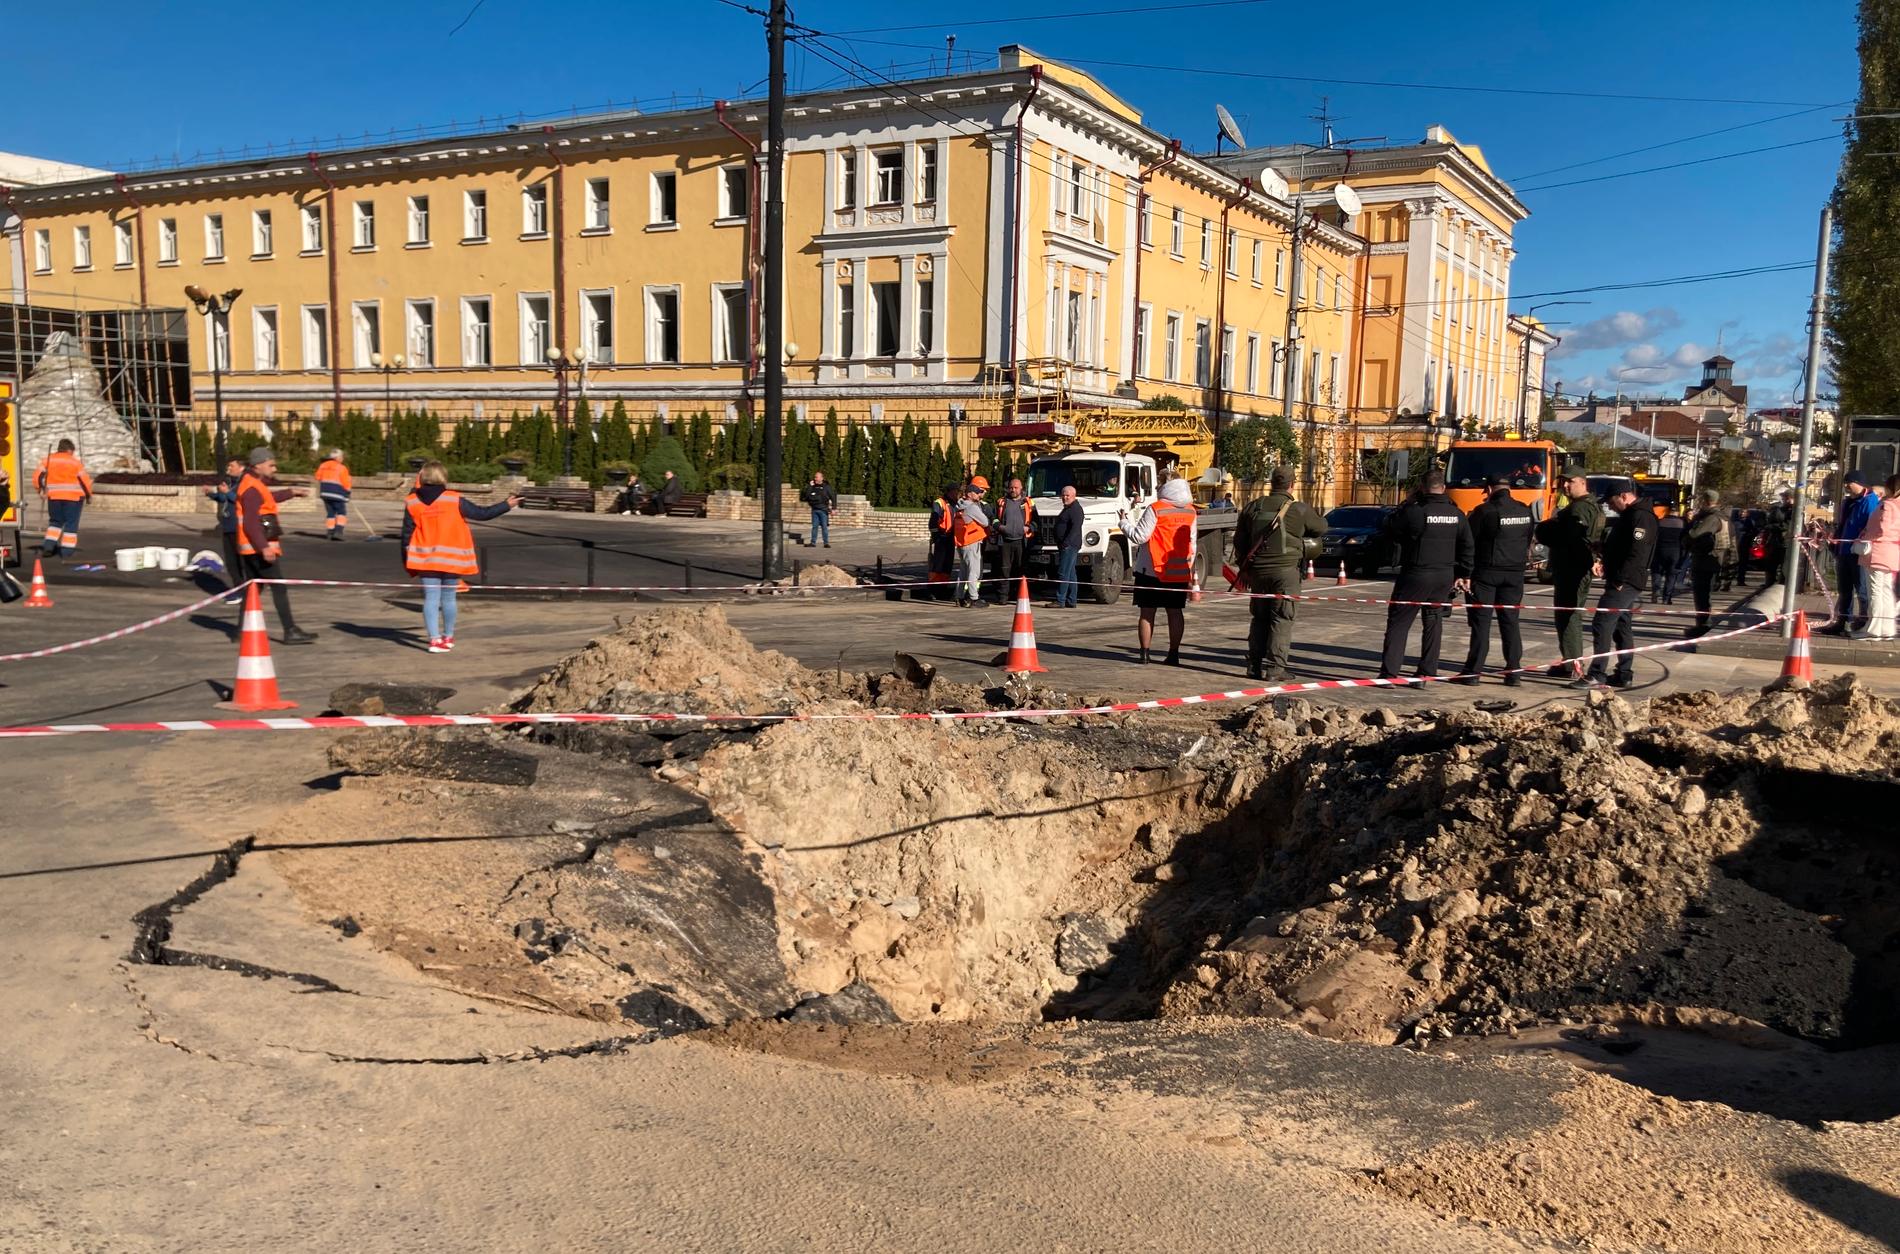 ”Mycket viktiga militära byggnader” träffades enligt Vladimir Putin. I själva verket var alla hus kring nedslagsplatsen på Taras Sjevtjenko-boulevarden civila.